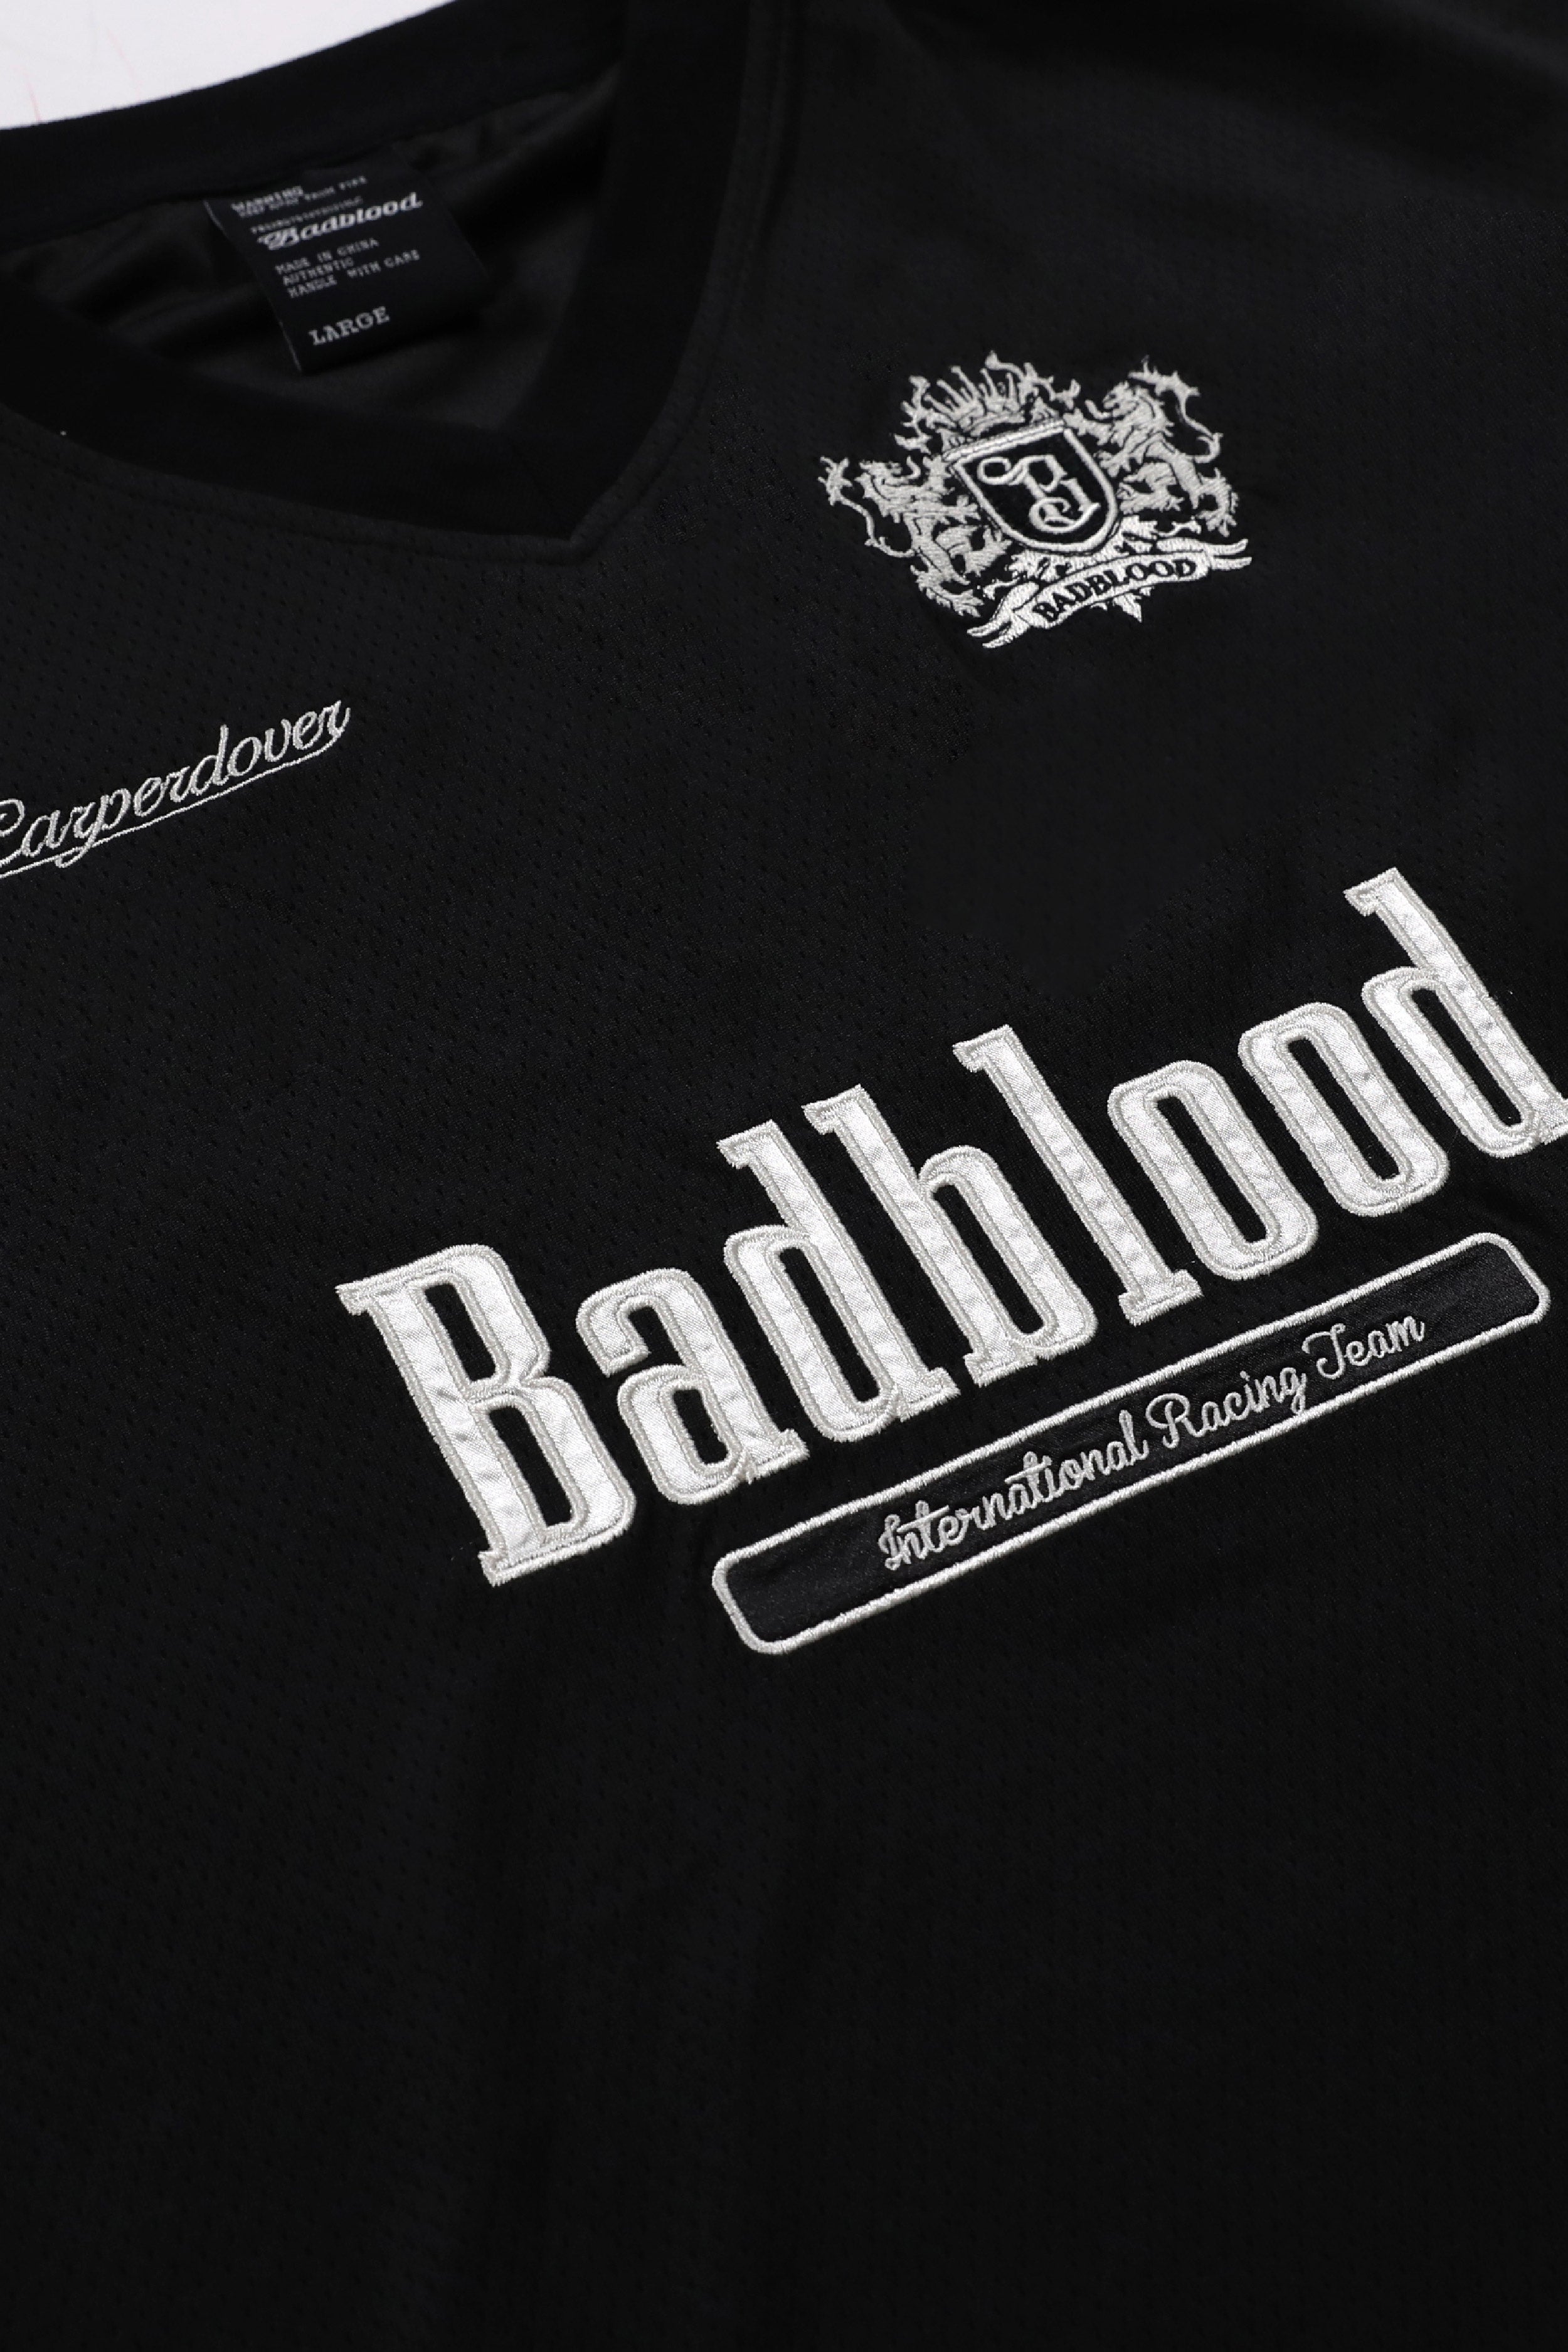 Badblood Sports Club 1/2 T 卹黑色